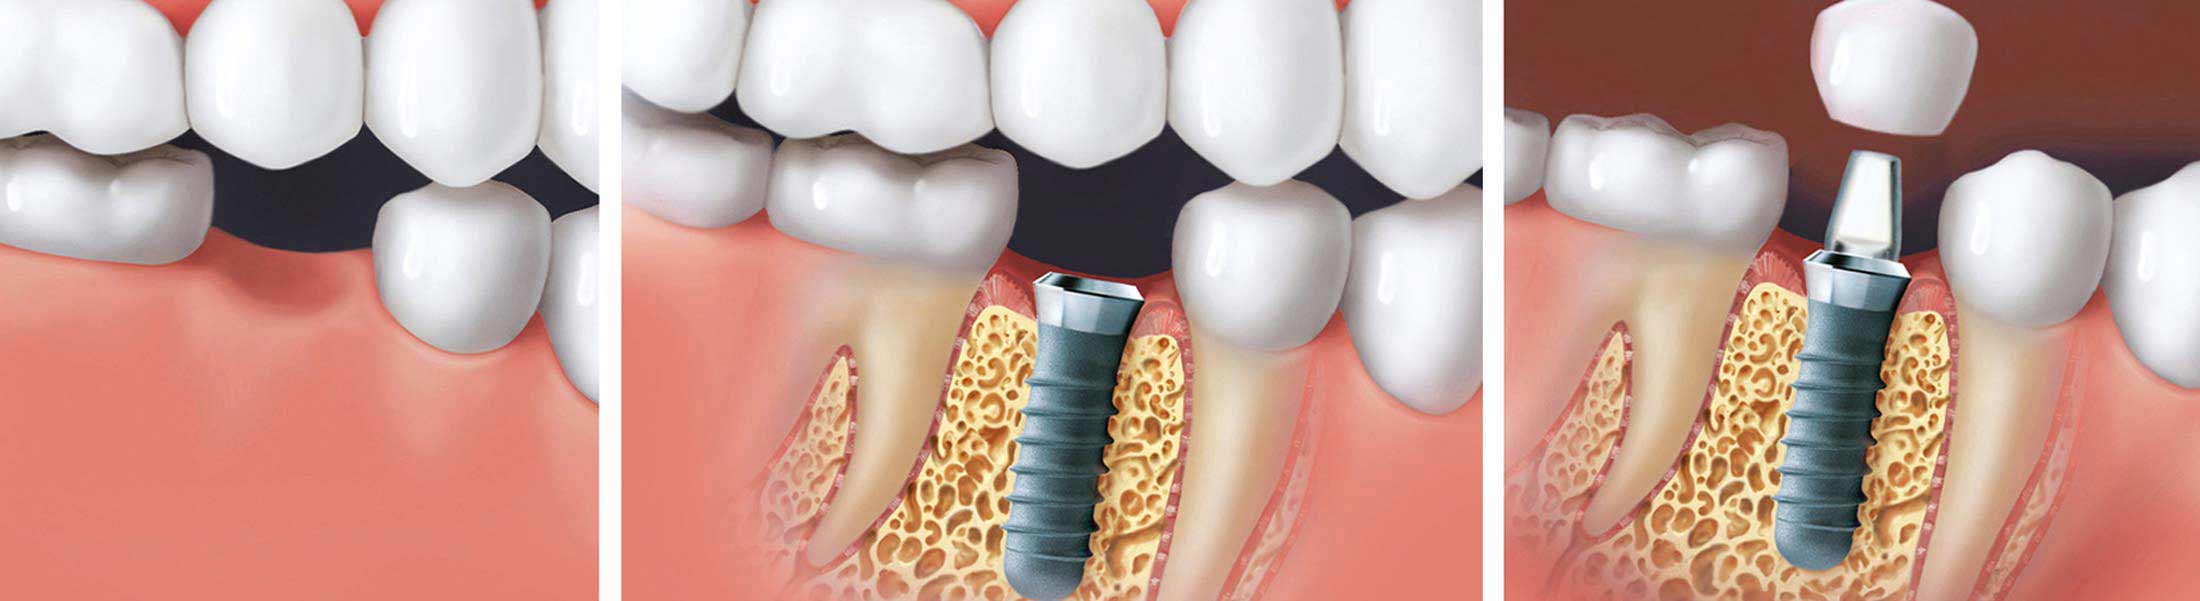 Ablauf einer dentalen Implantation